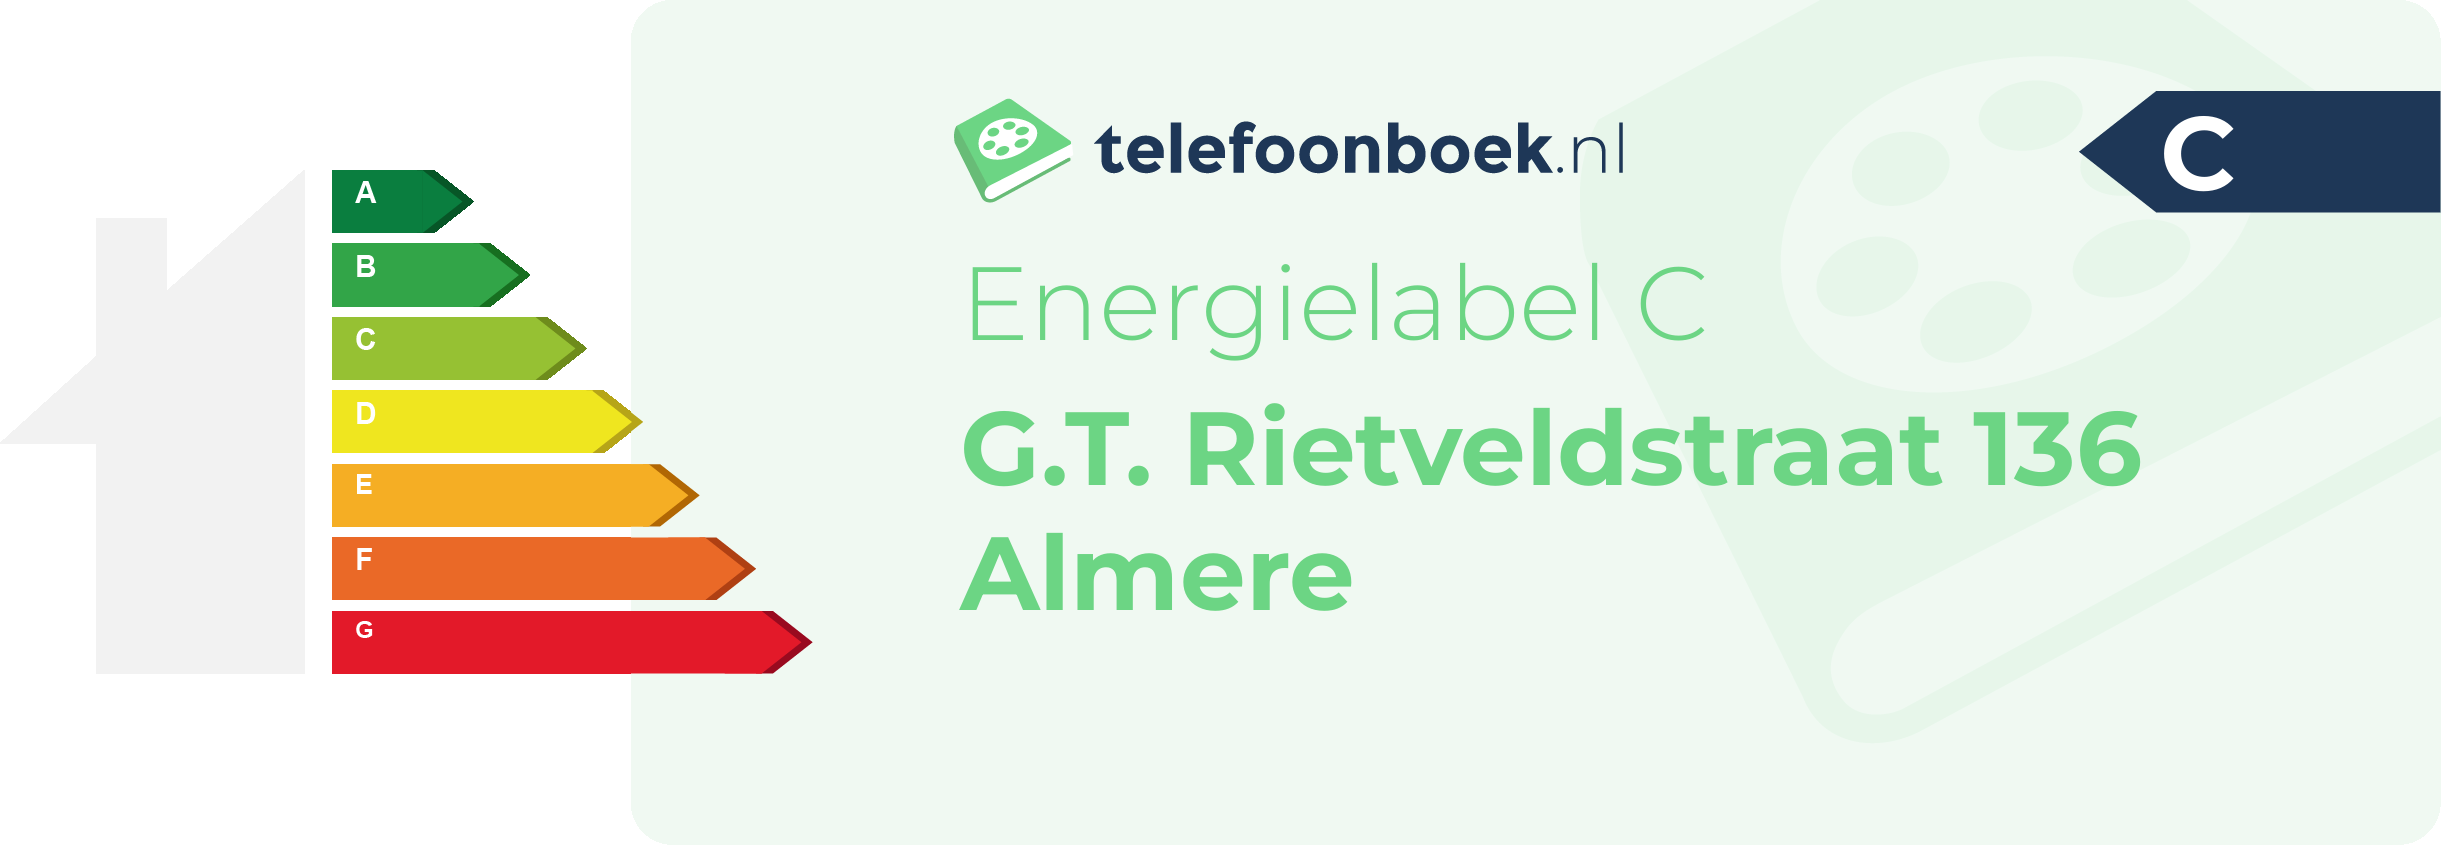 Energielabel G.T. Rietveldstraat 136 Almere